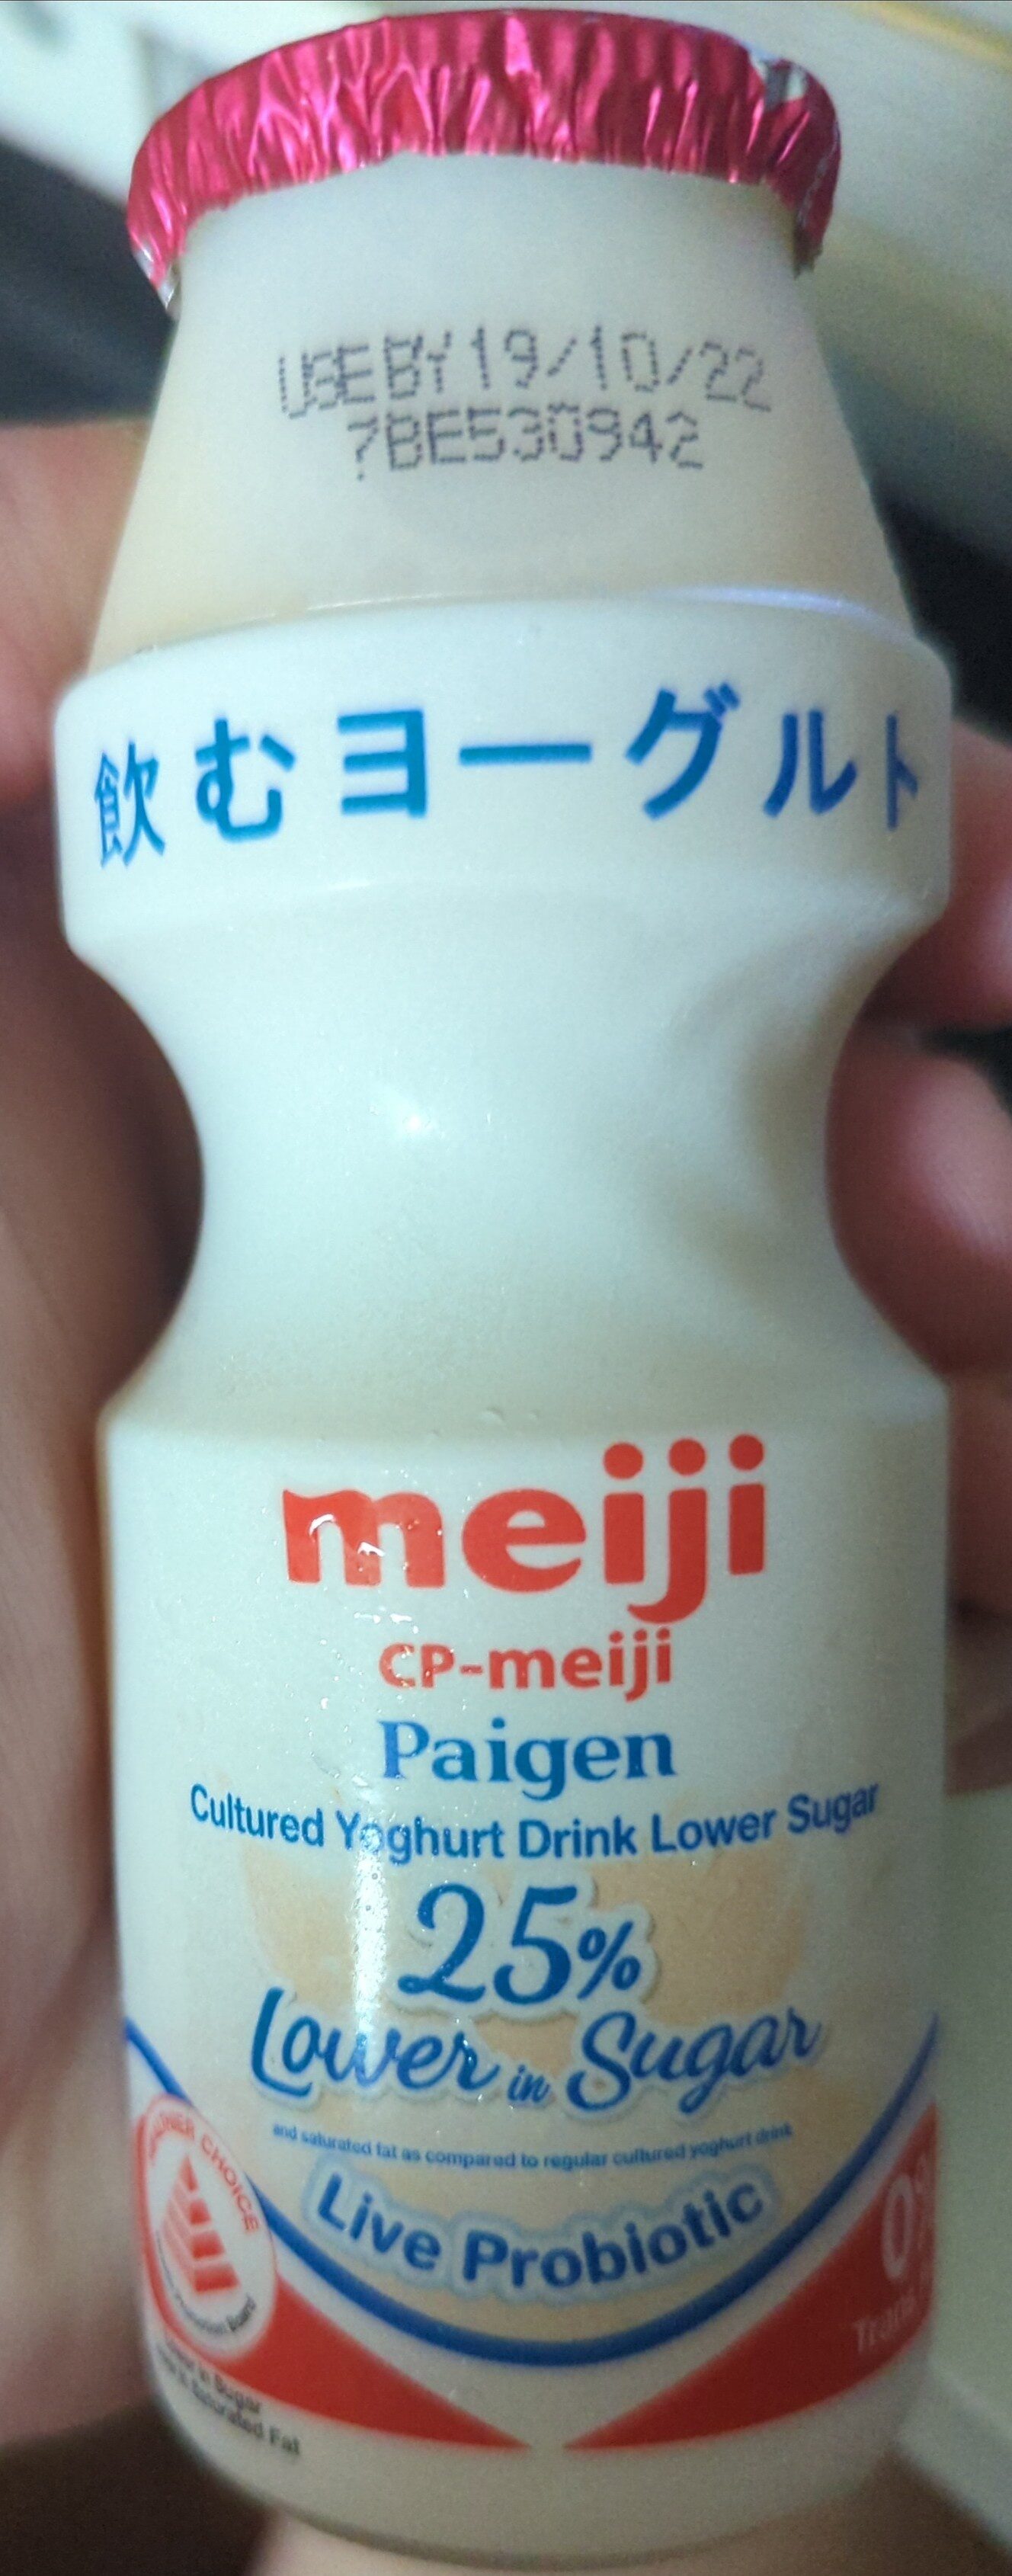 Paigen Cultured Yoghurt Drink Lower Sugar - Produit - en